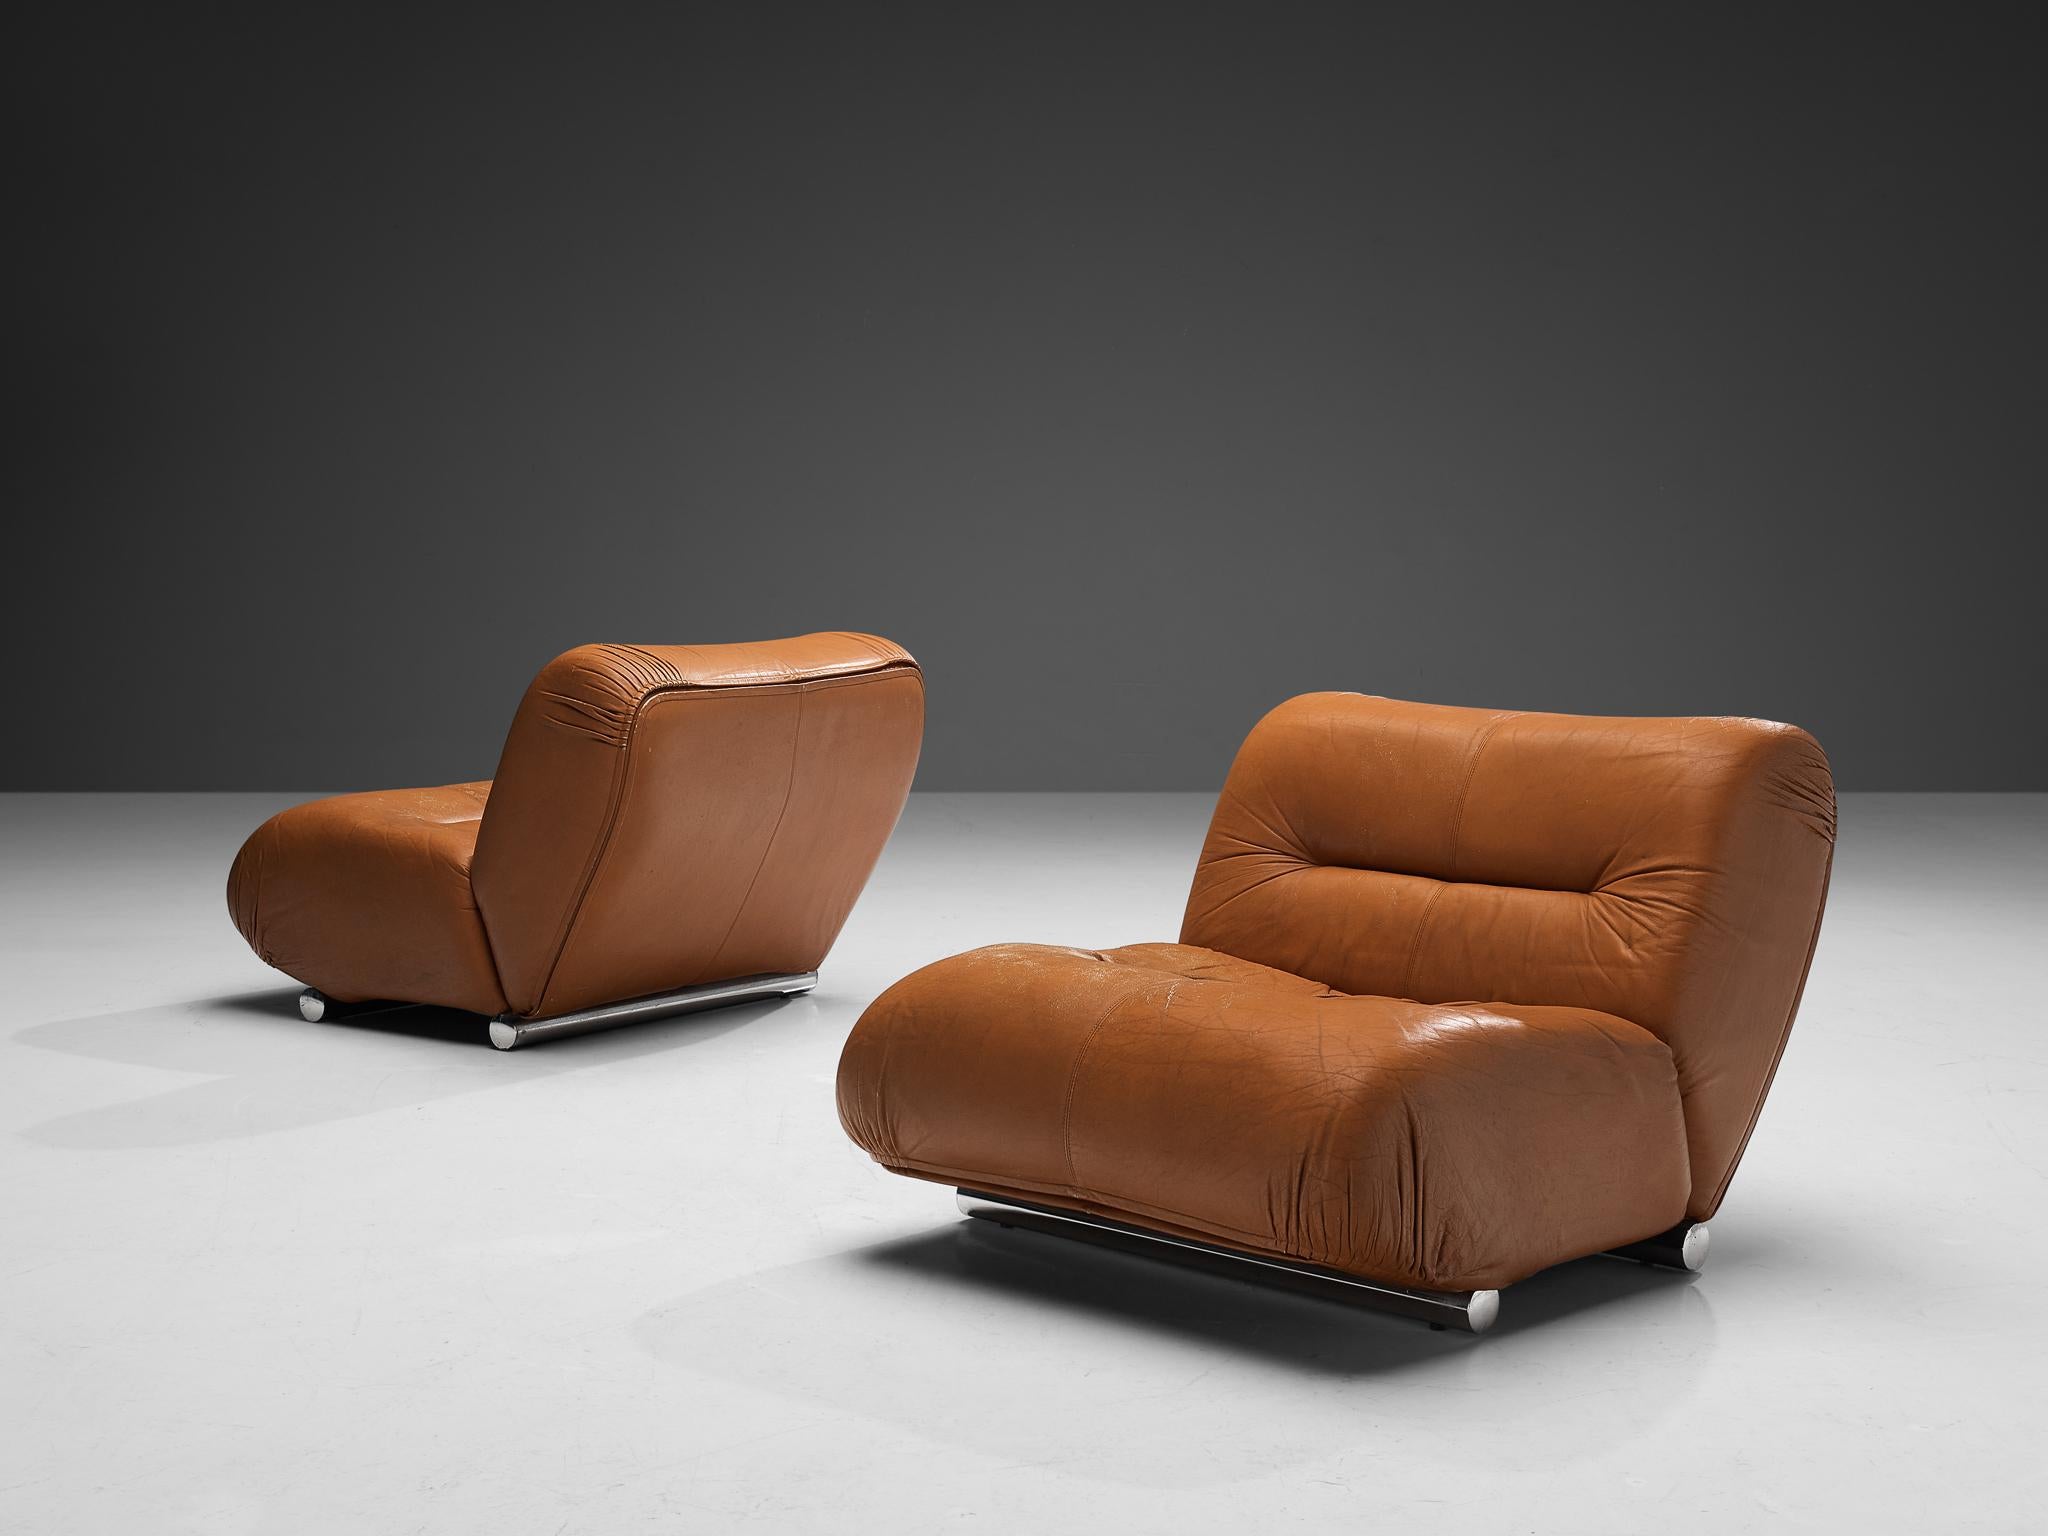 Giuseppe Munari, chaises longues ou canapé sectionnel, cuir, acier chromé, Italie, années 1970.

Ce design se caractérise par une forme en L reposant sur deux coussins touffetés reliés l'un à l'autre. Cela donne à la chaise un aspect volumineux et